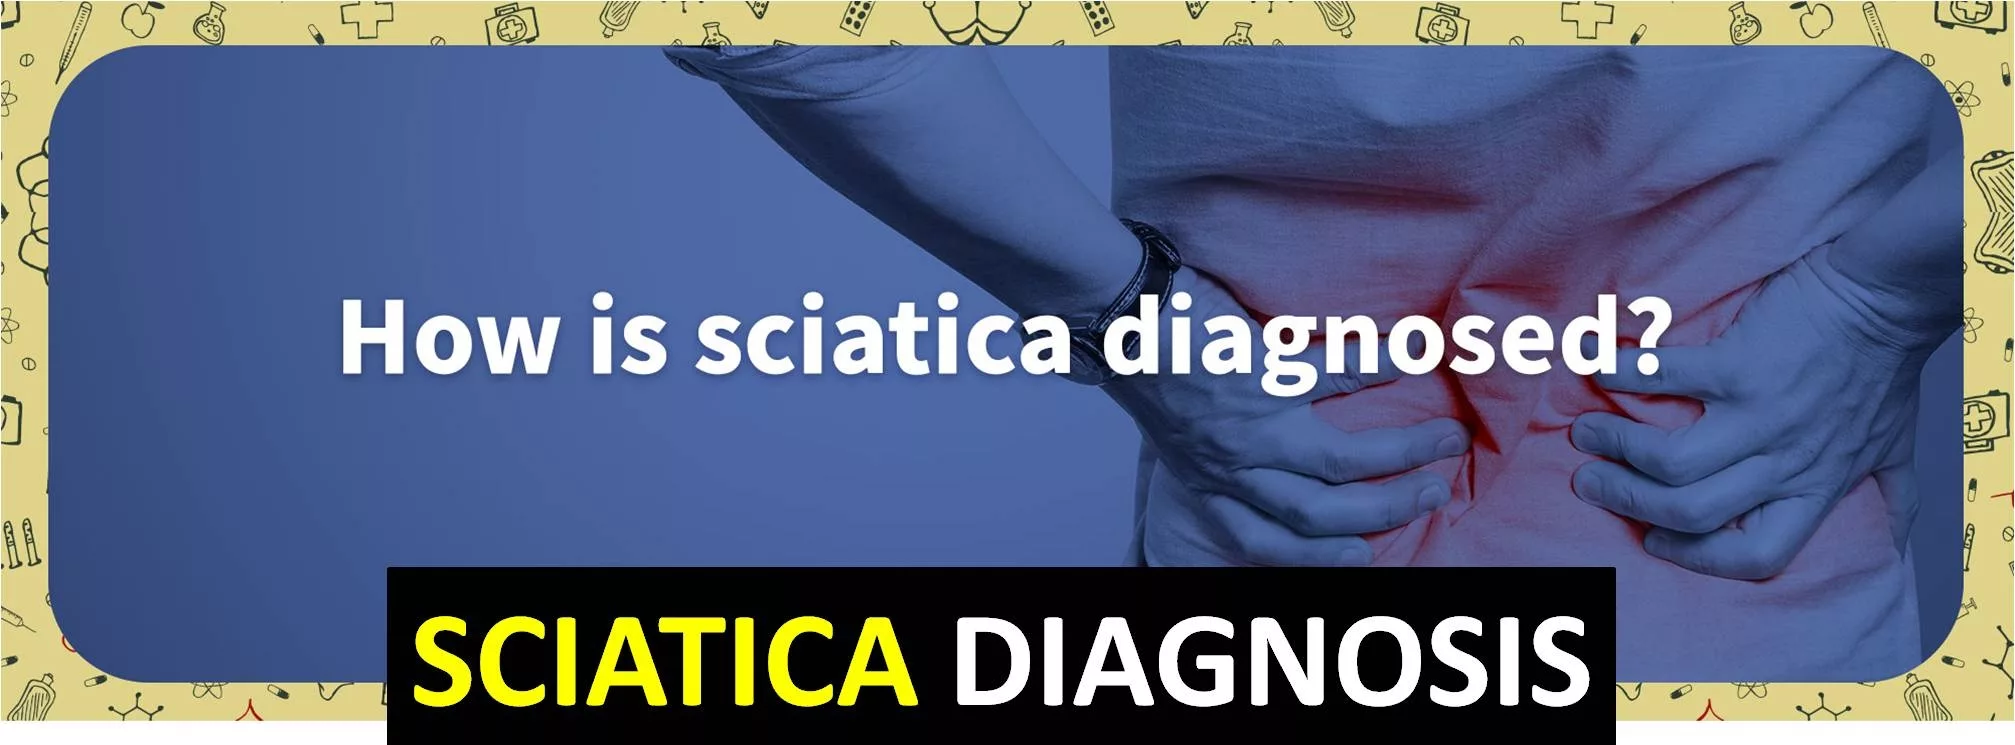 sciatica diagnosis